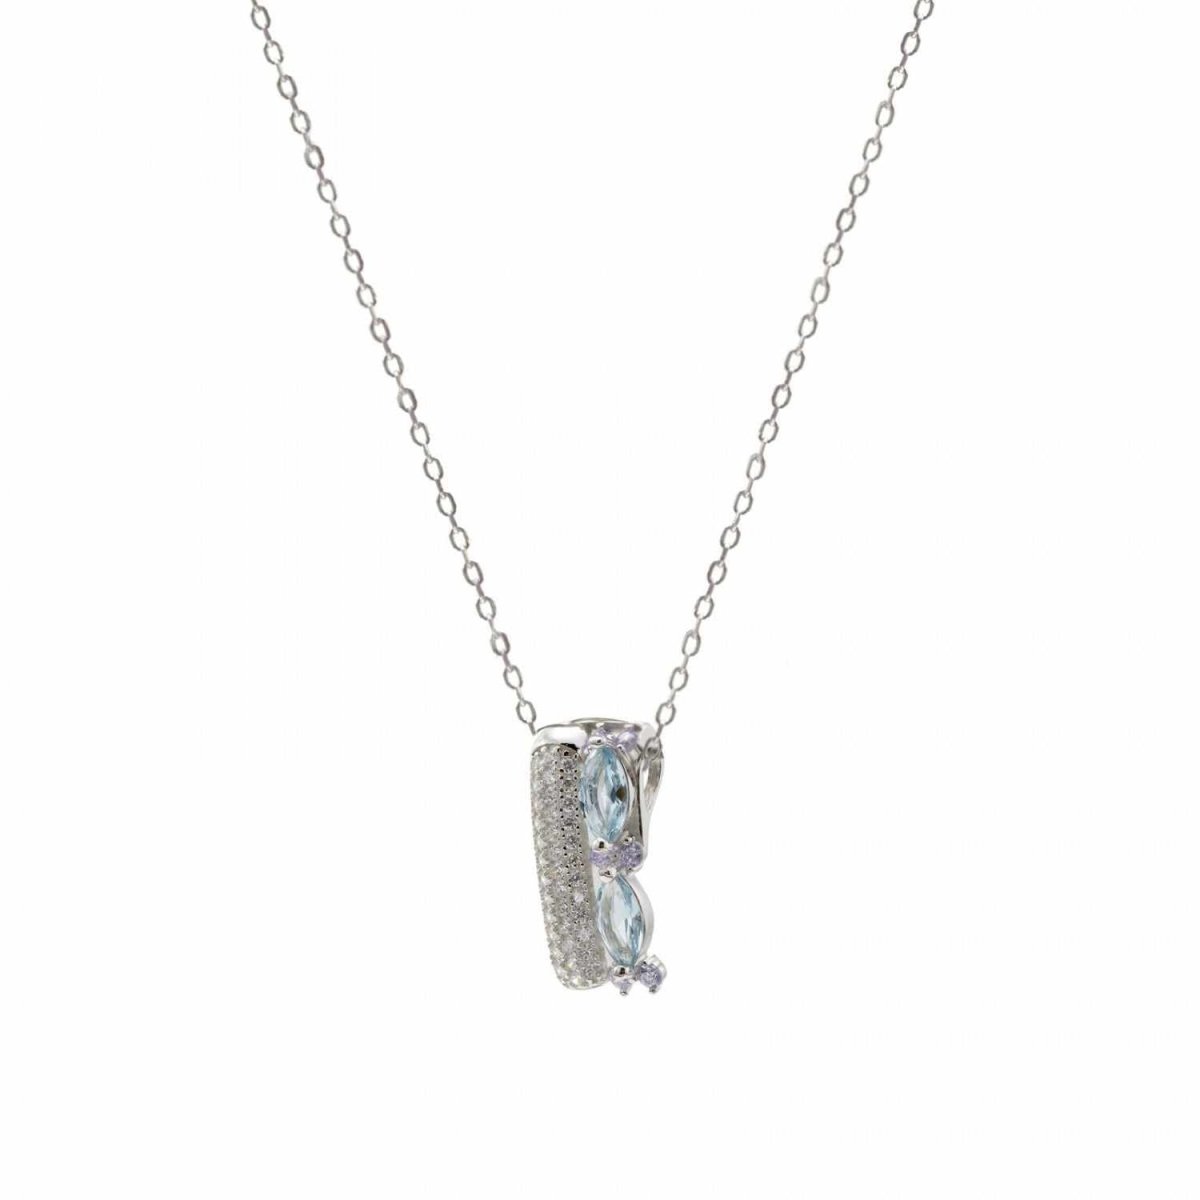 Collar · Collares con piedras en plata diseño lateral circonitas talla marquesa azul